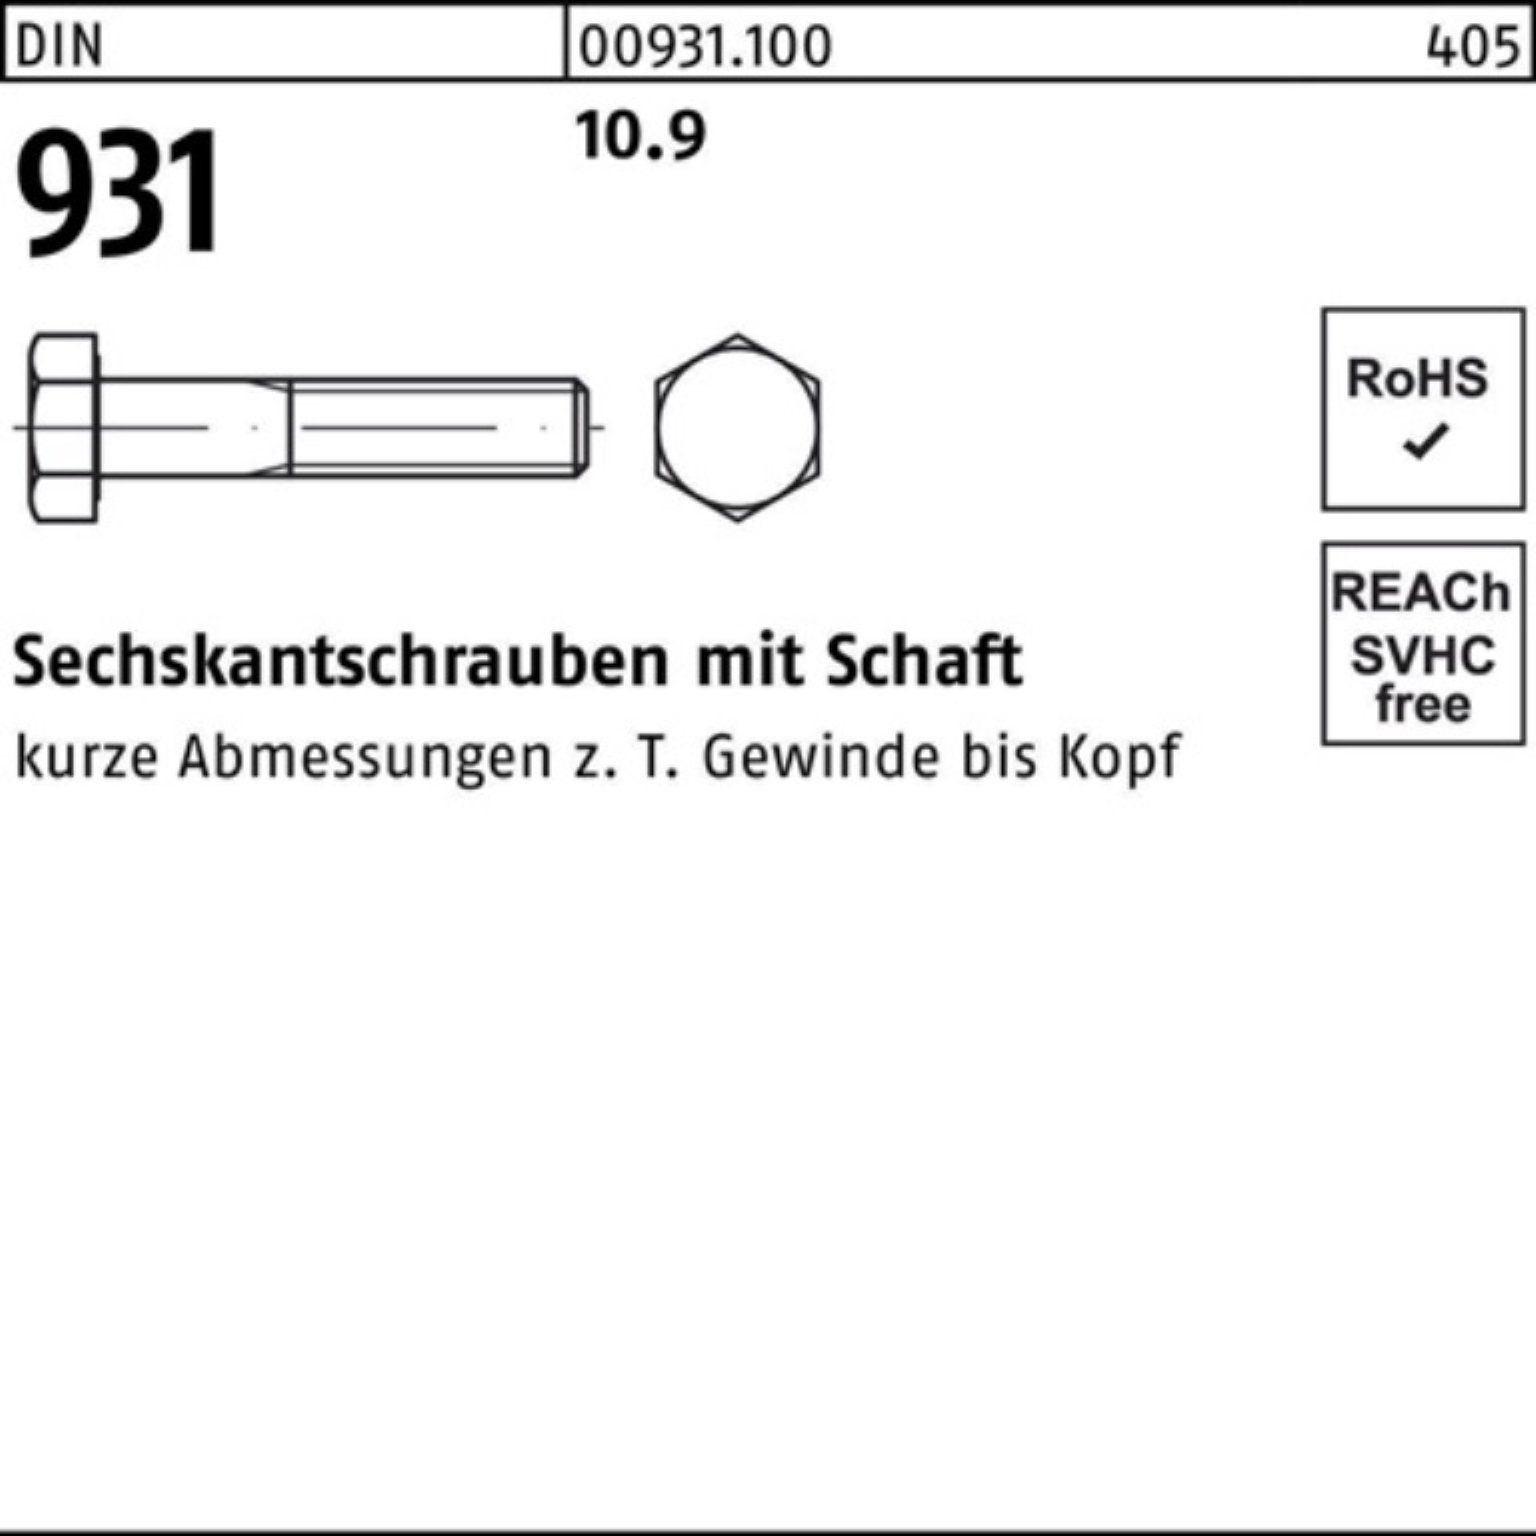 Reyher Sechskantschraube 100er Pack Sechskantschraube DIN M16x DI 25 Stück 931 10.9 Schaft 250